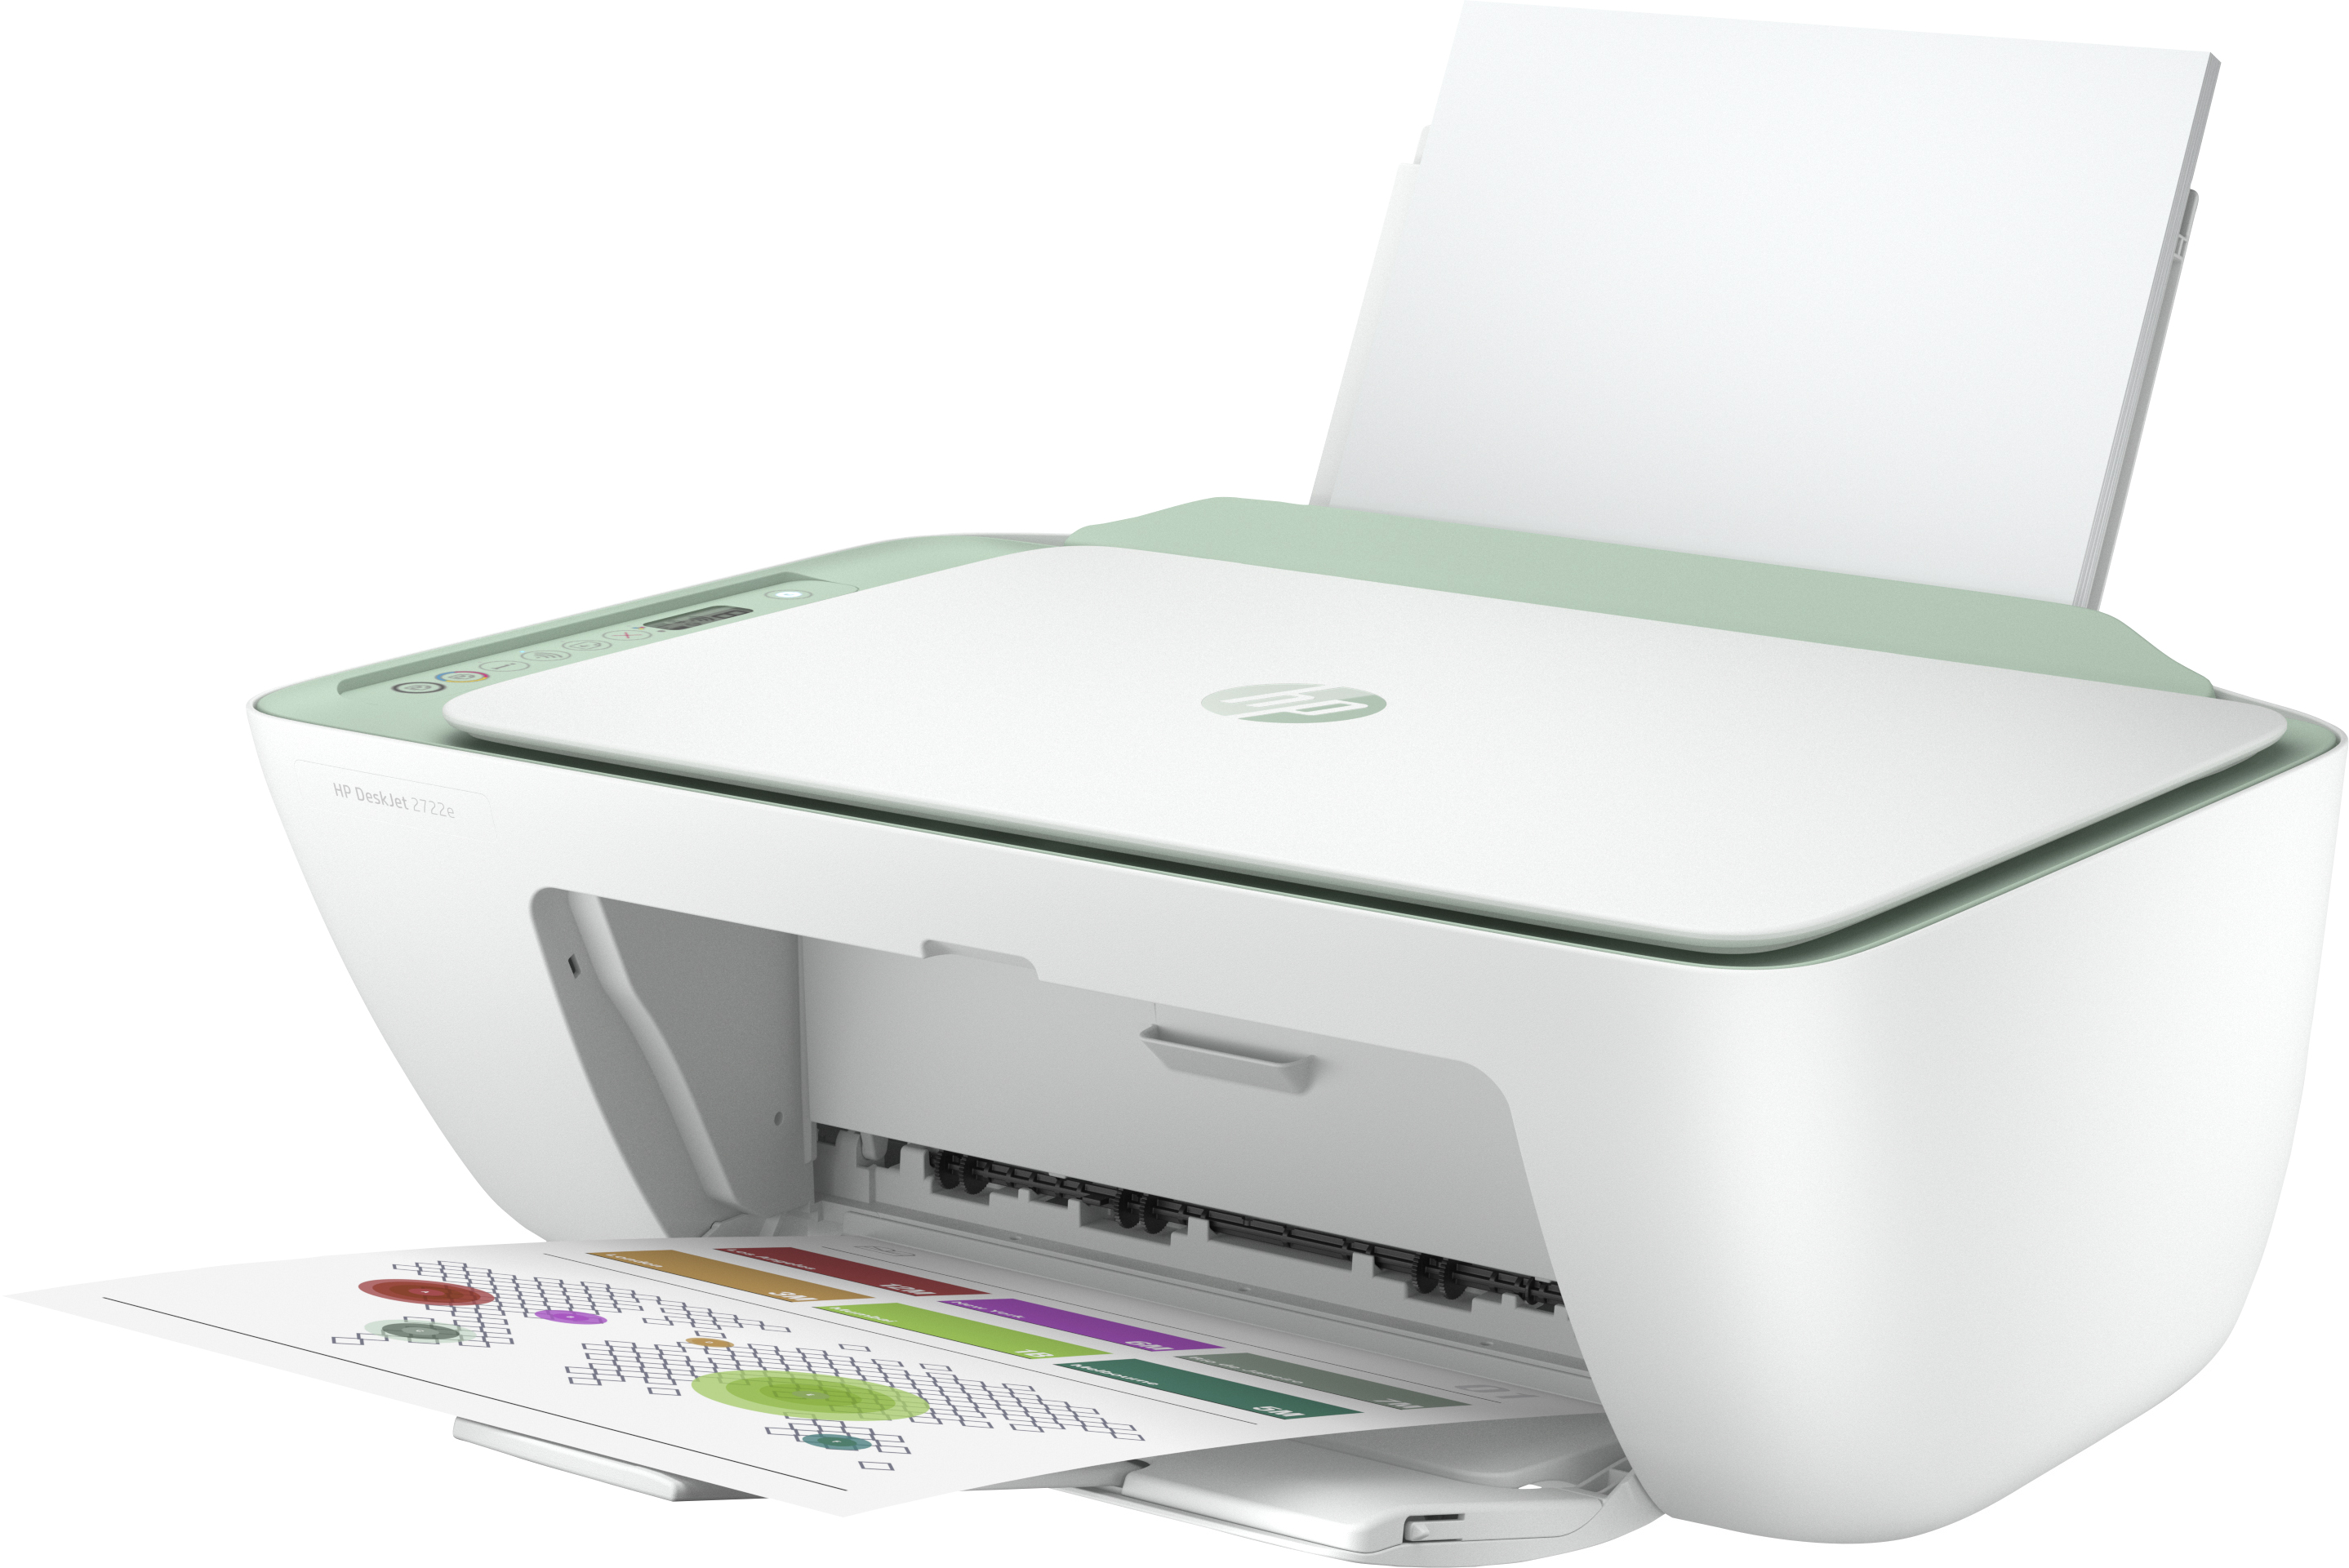 HP DeskJet 2722e Inkjet WLAN Multifunktionsdrucker